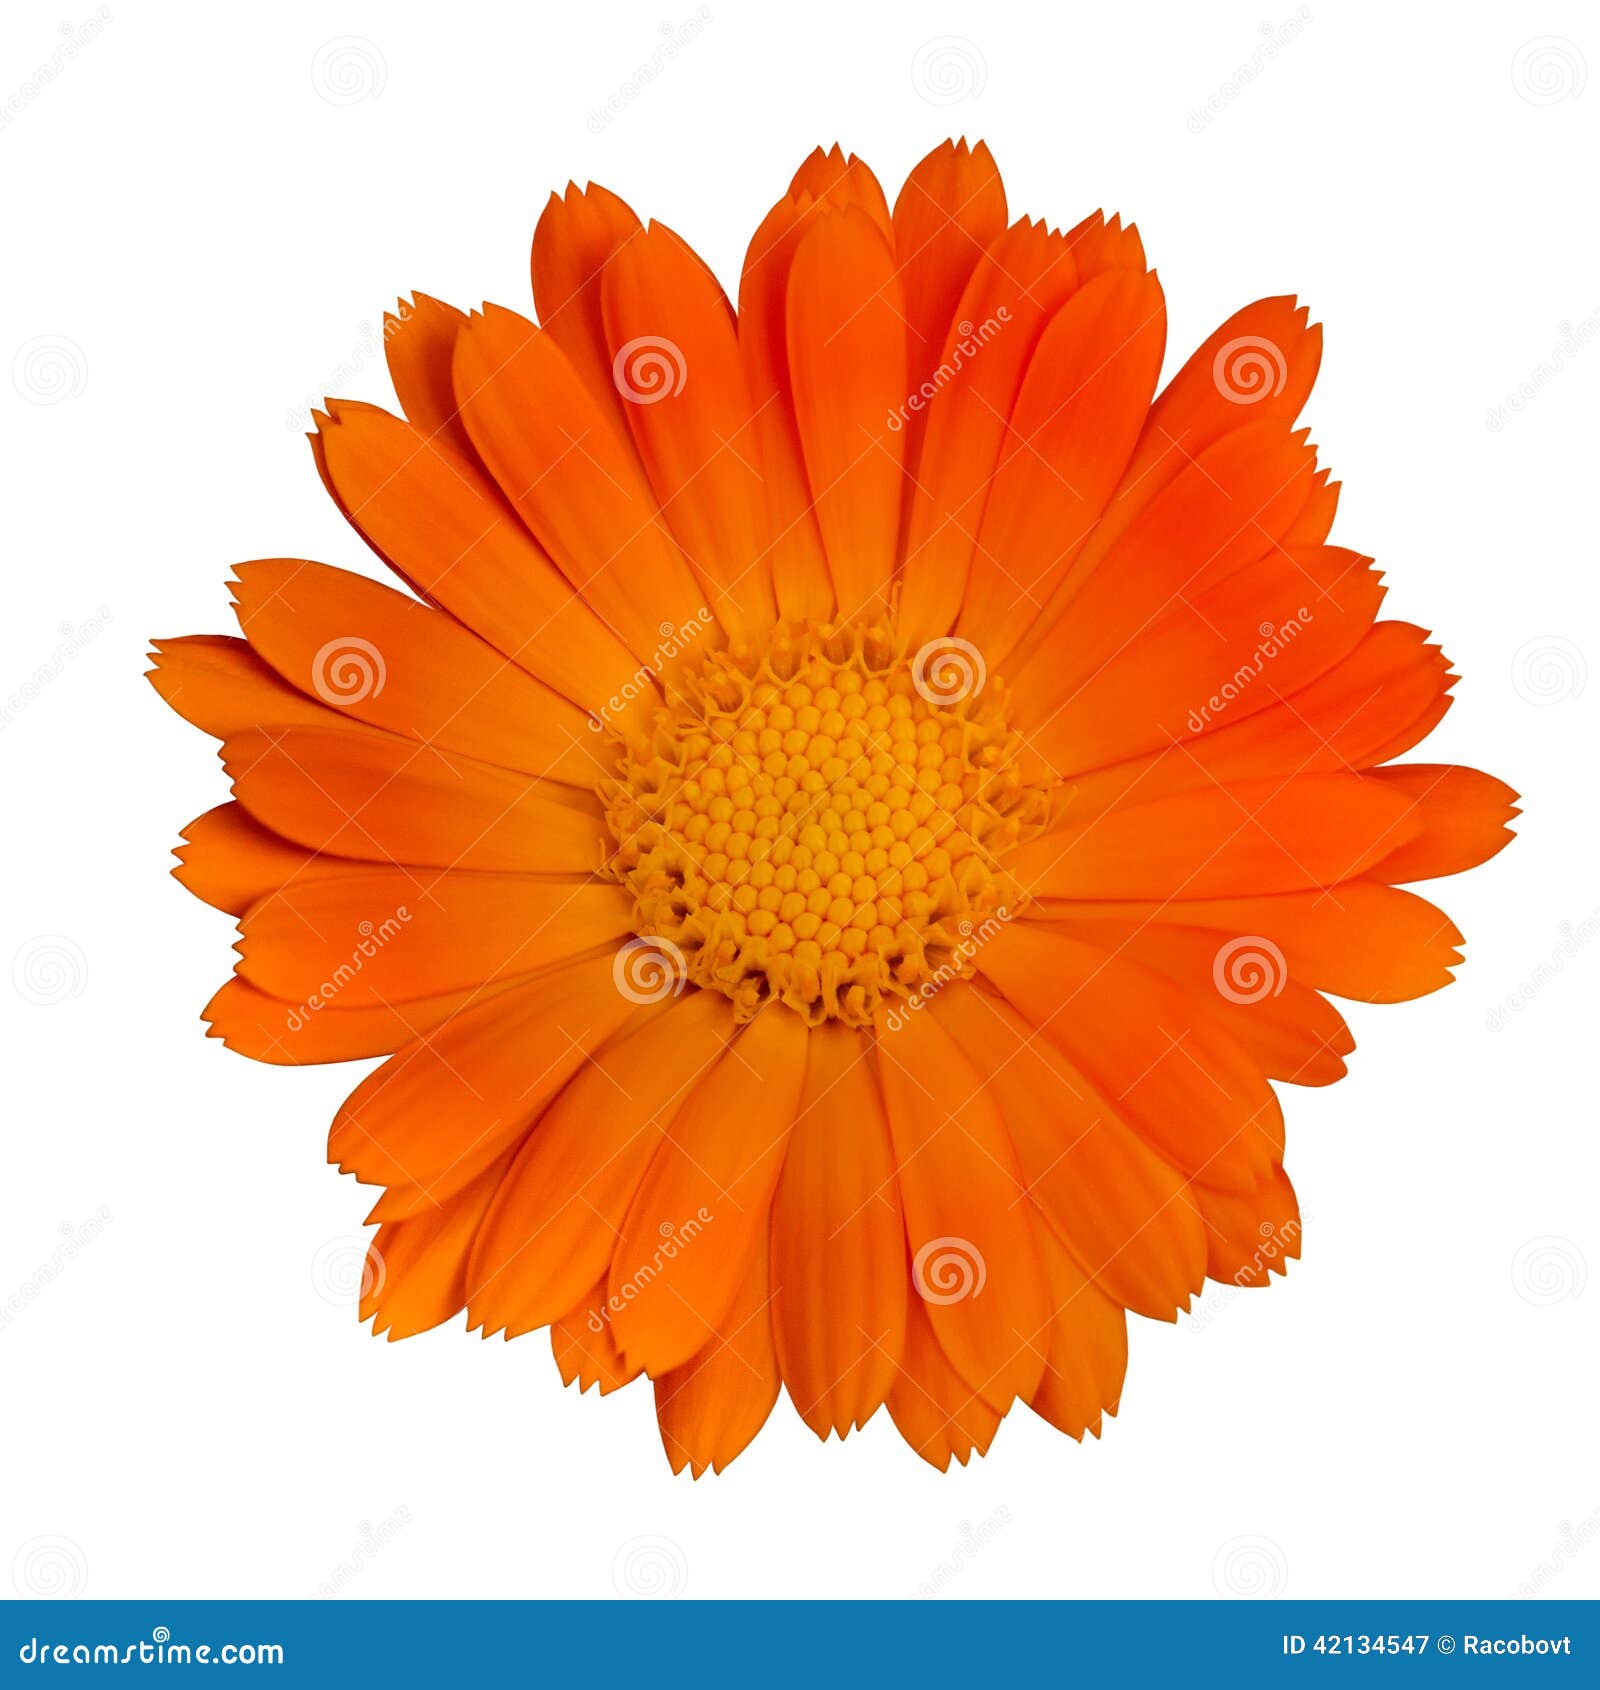 Оранжевые Цветы Фото